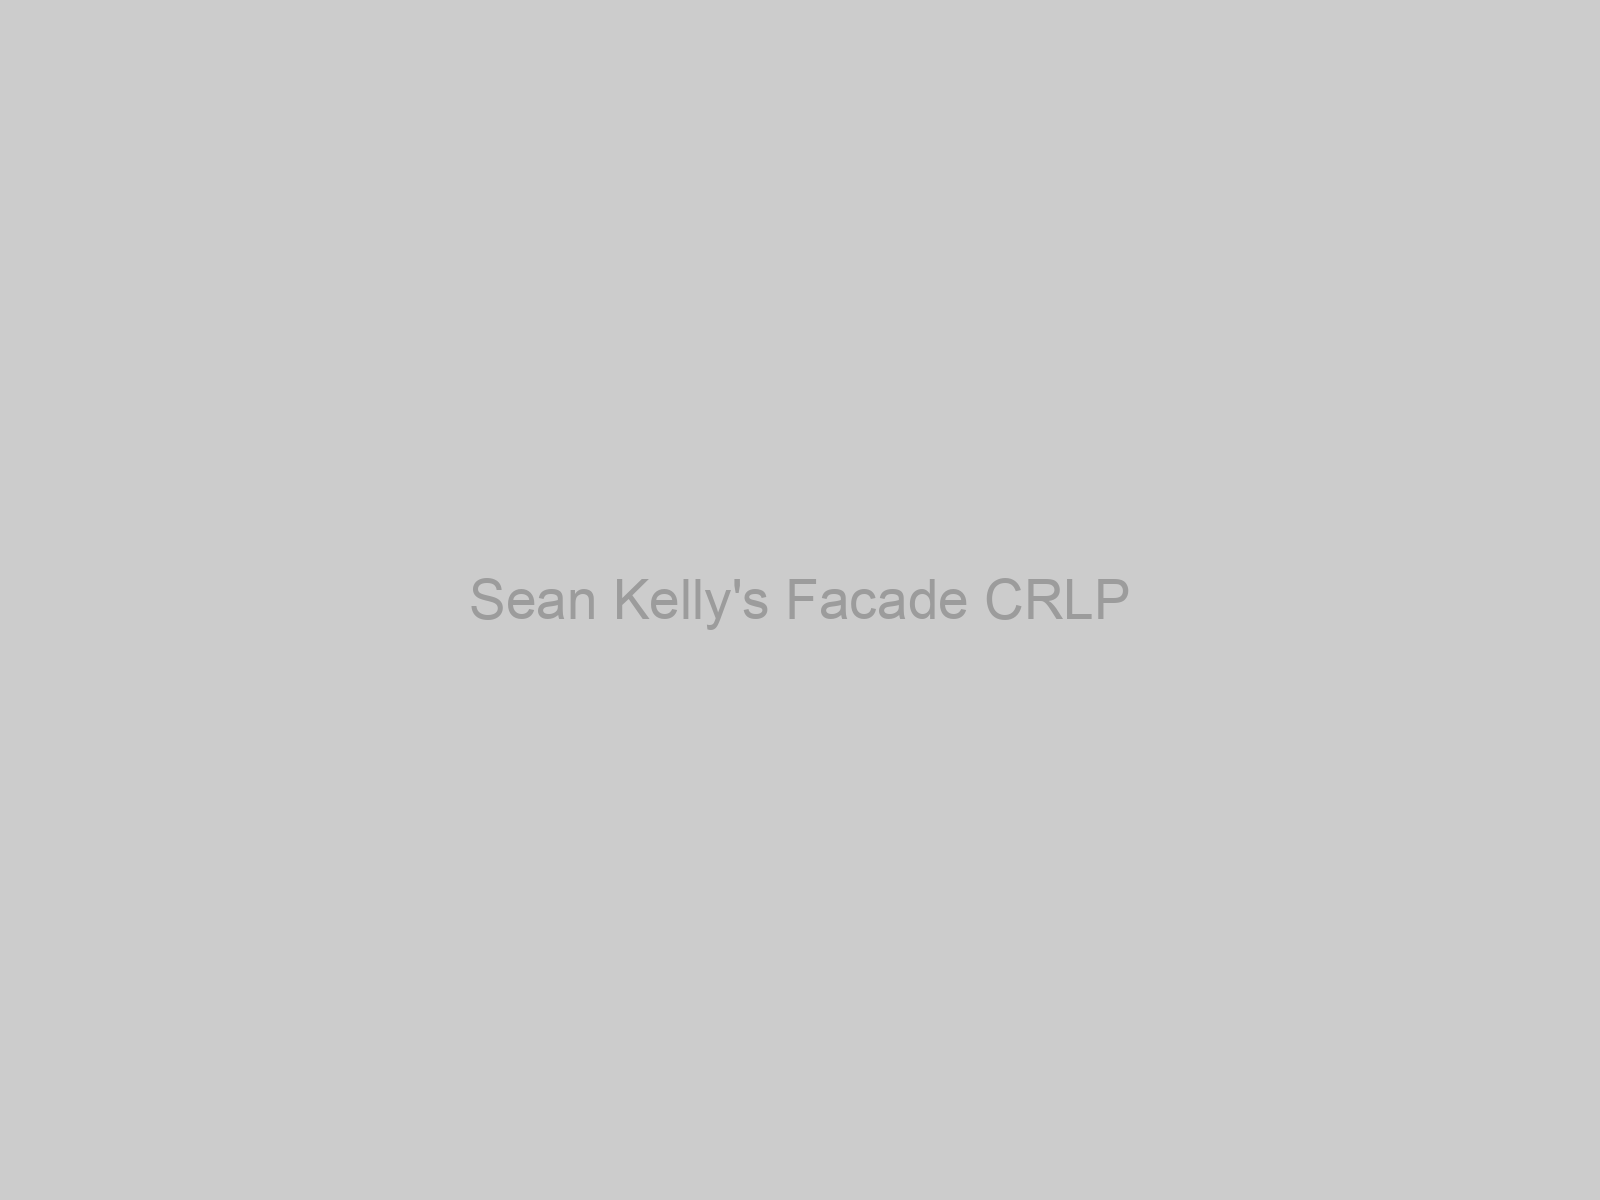 Sean Kelly's Facade CRLP